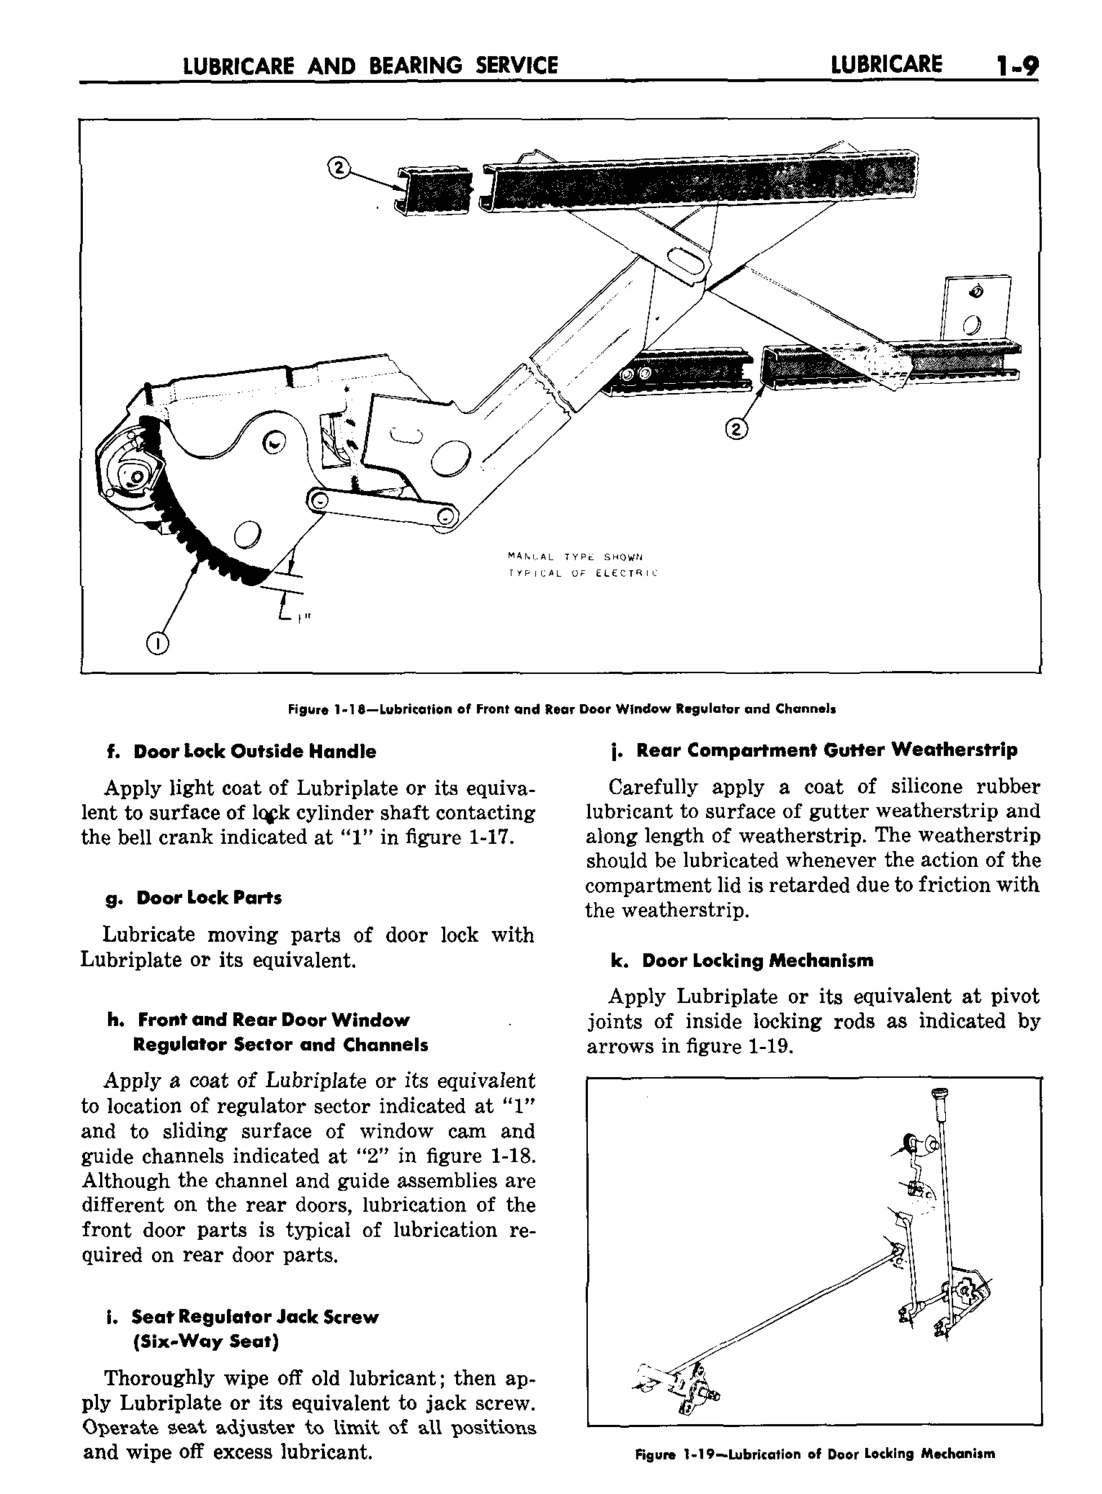 n_02 1959 Buick Shop Manual - Lubricare-009-009.jpg